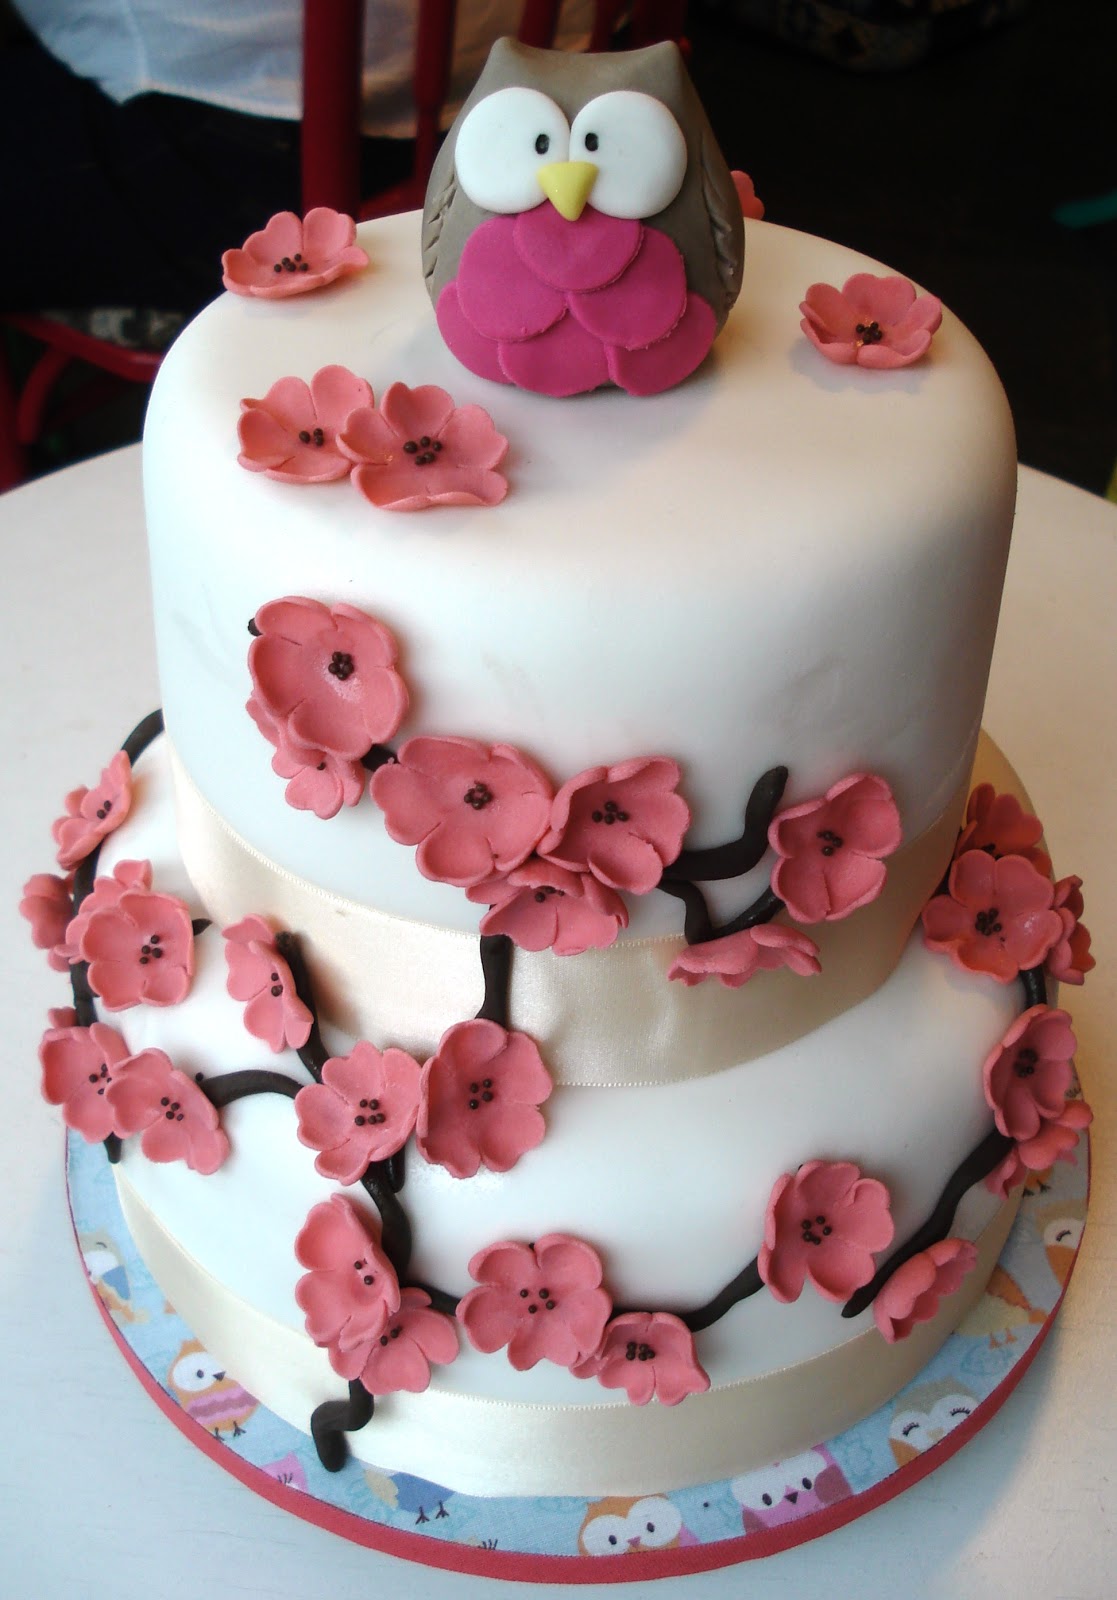 Um bolo roxo com glacê roxo e branco e um arco-íris no topo